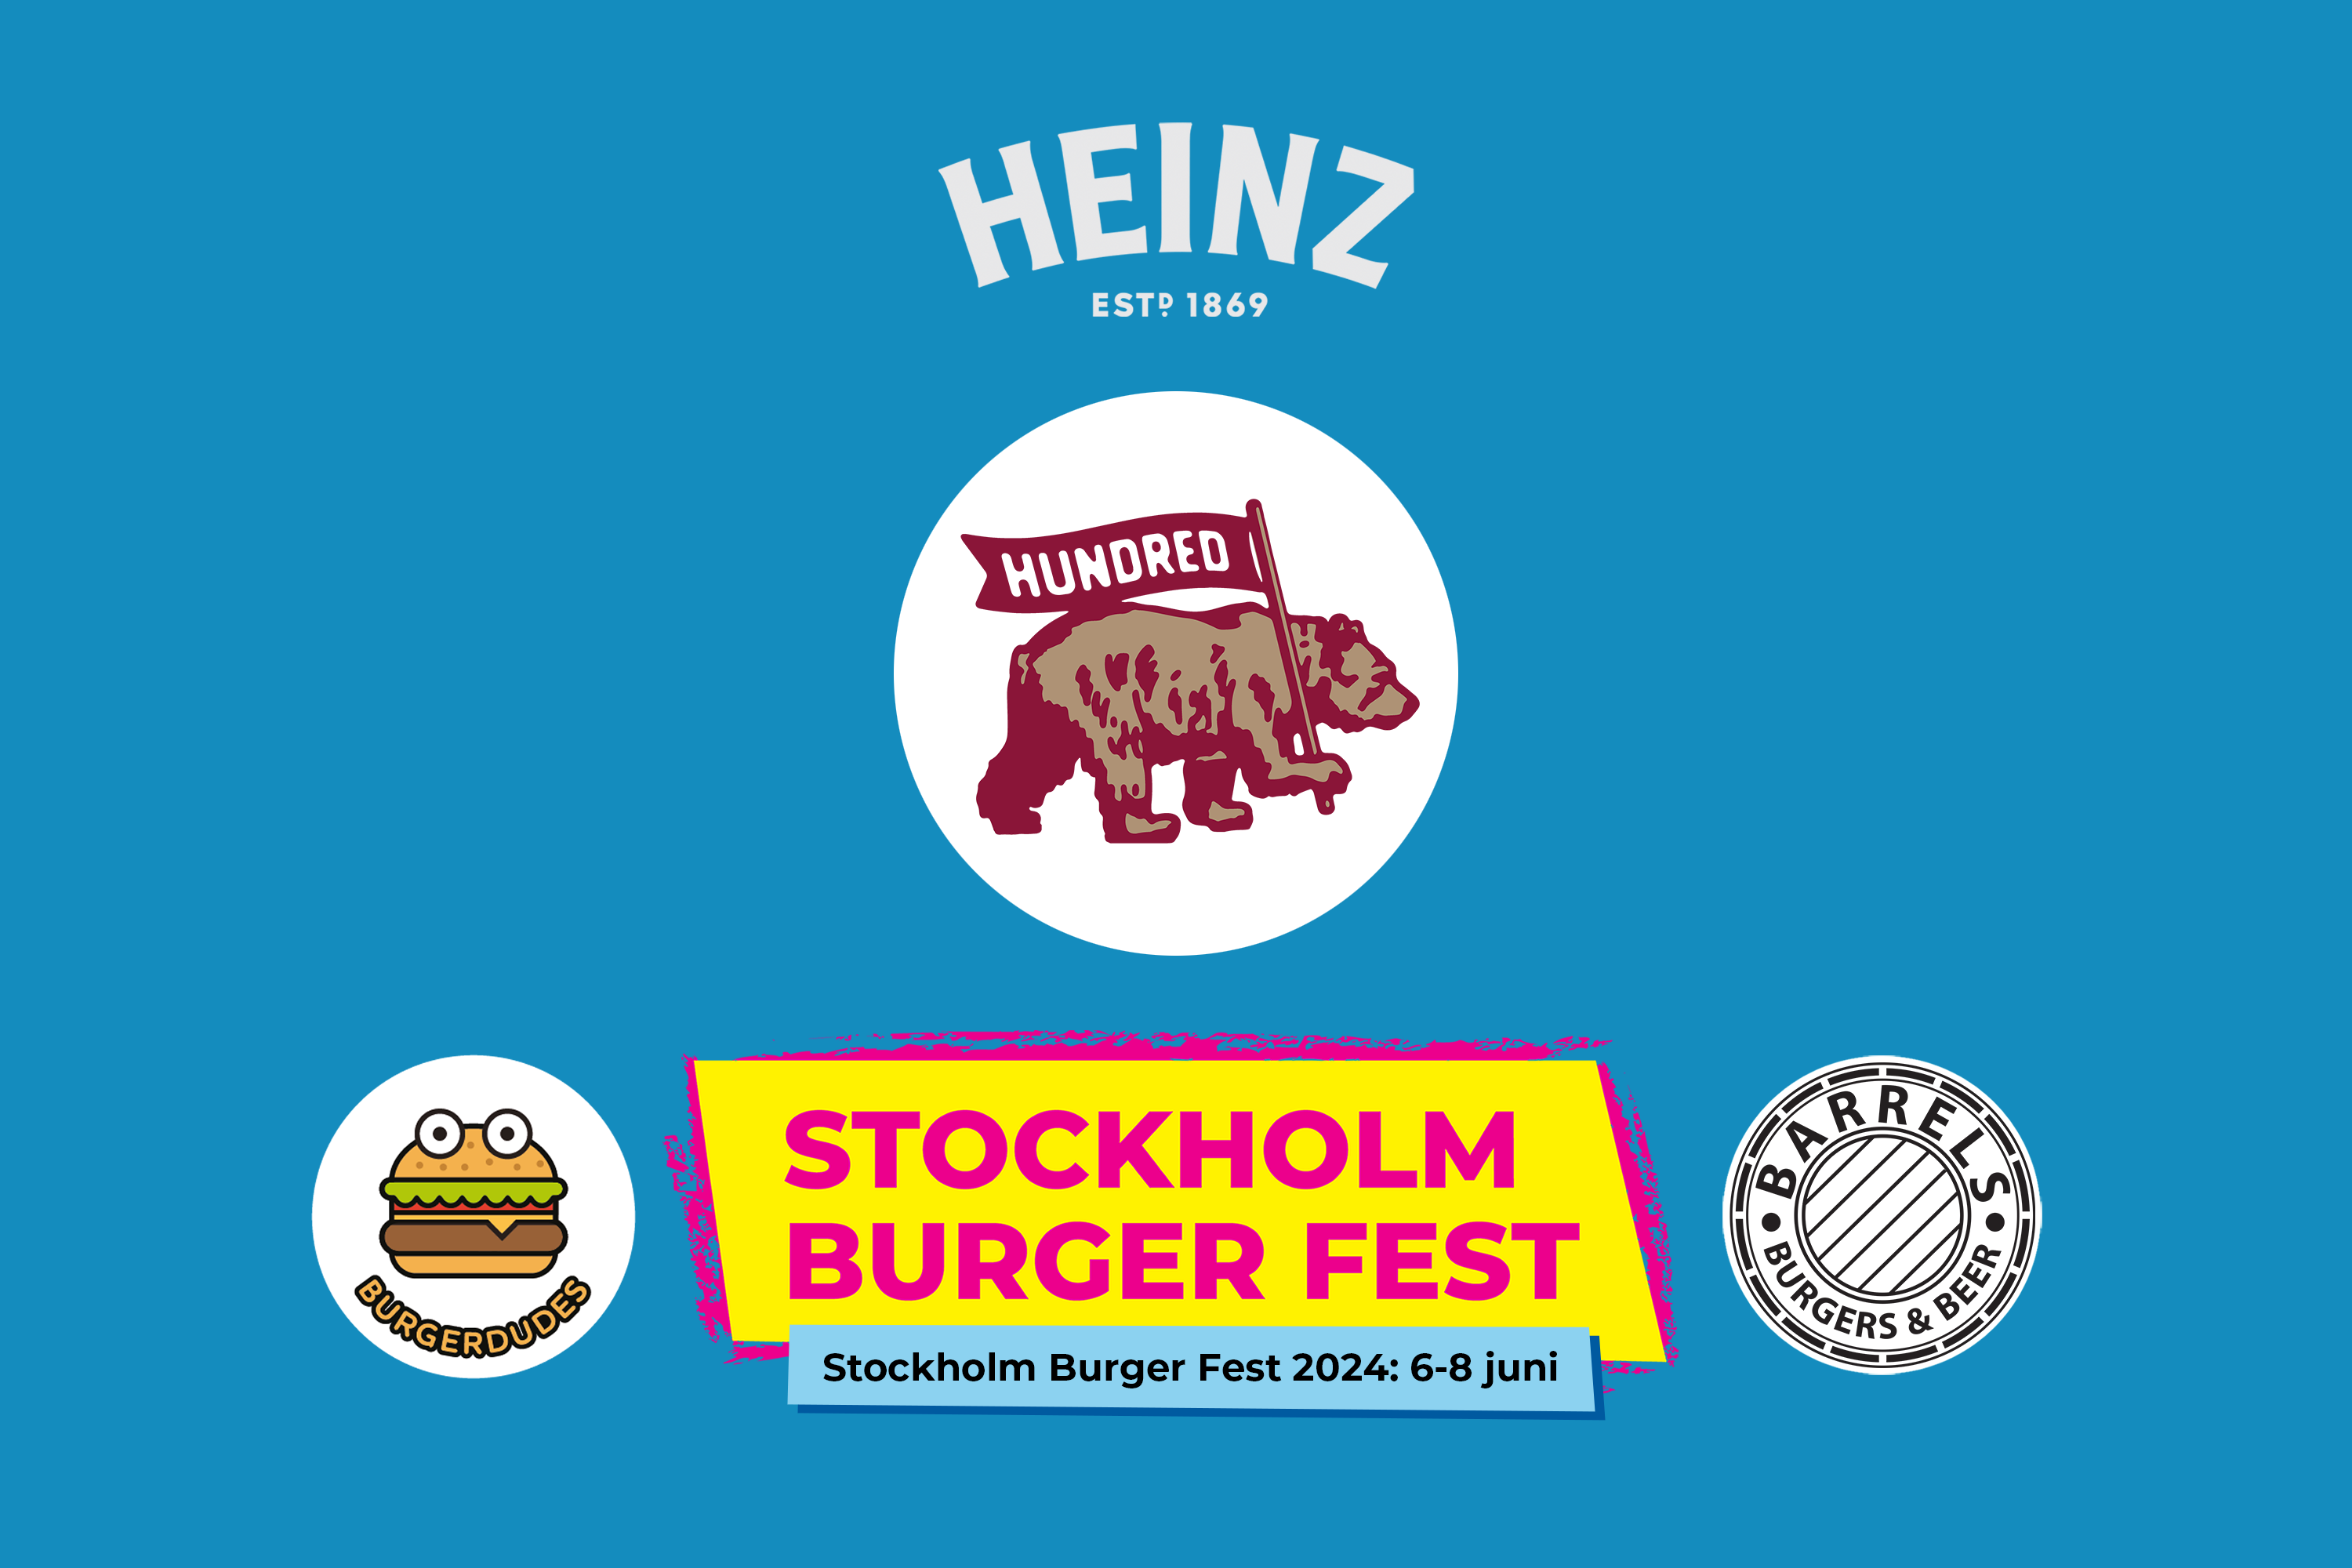 Stockholm Burger Fest 2024: Hundred Burgers